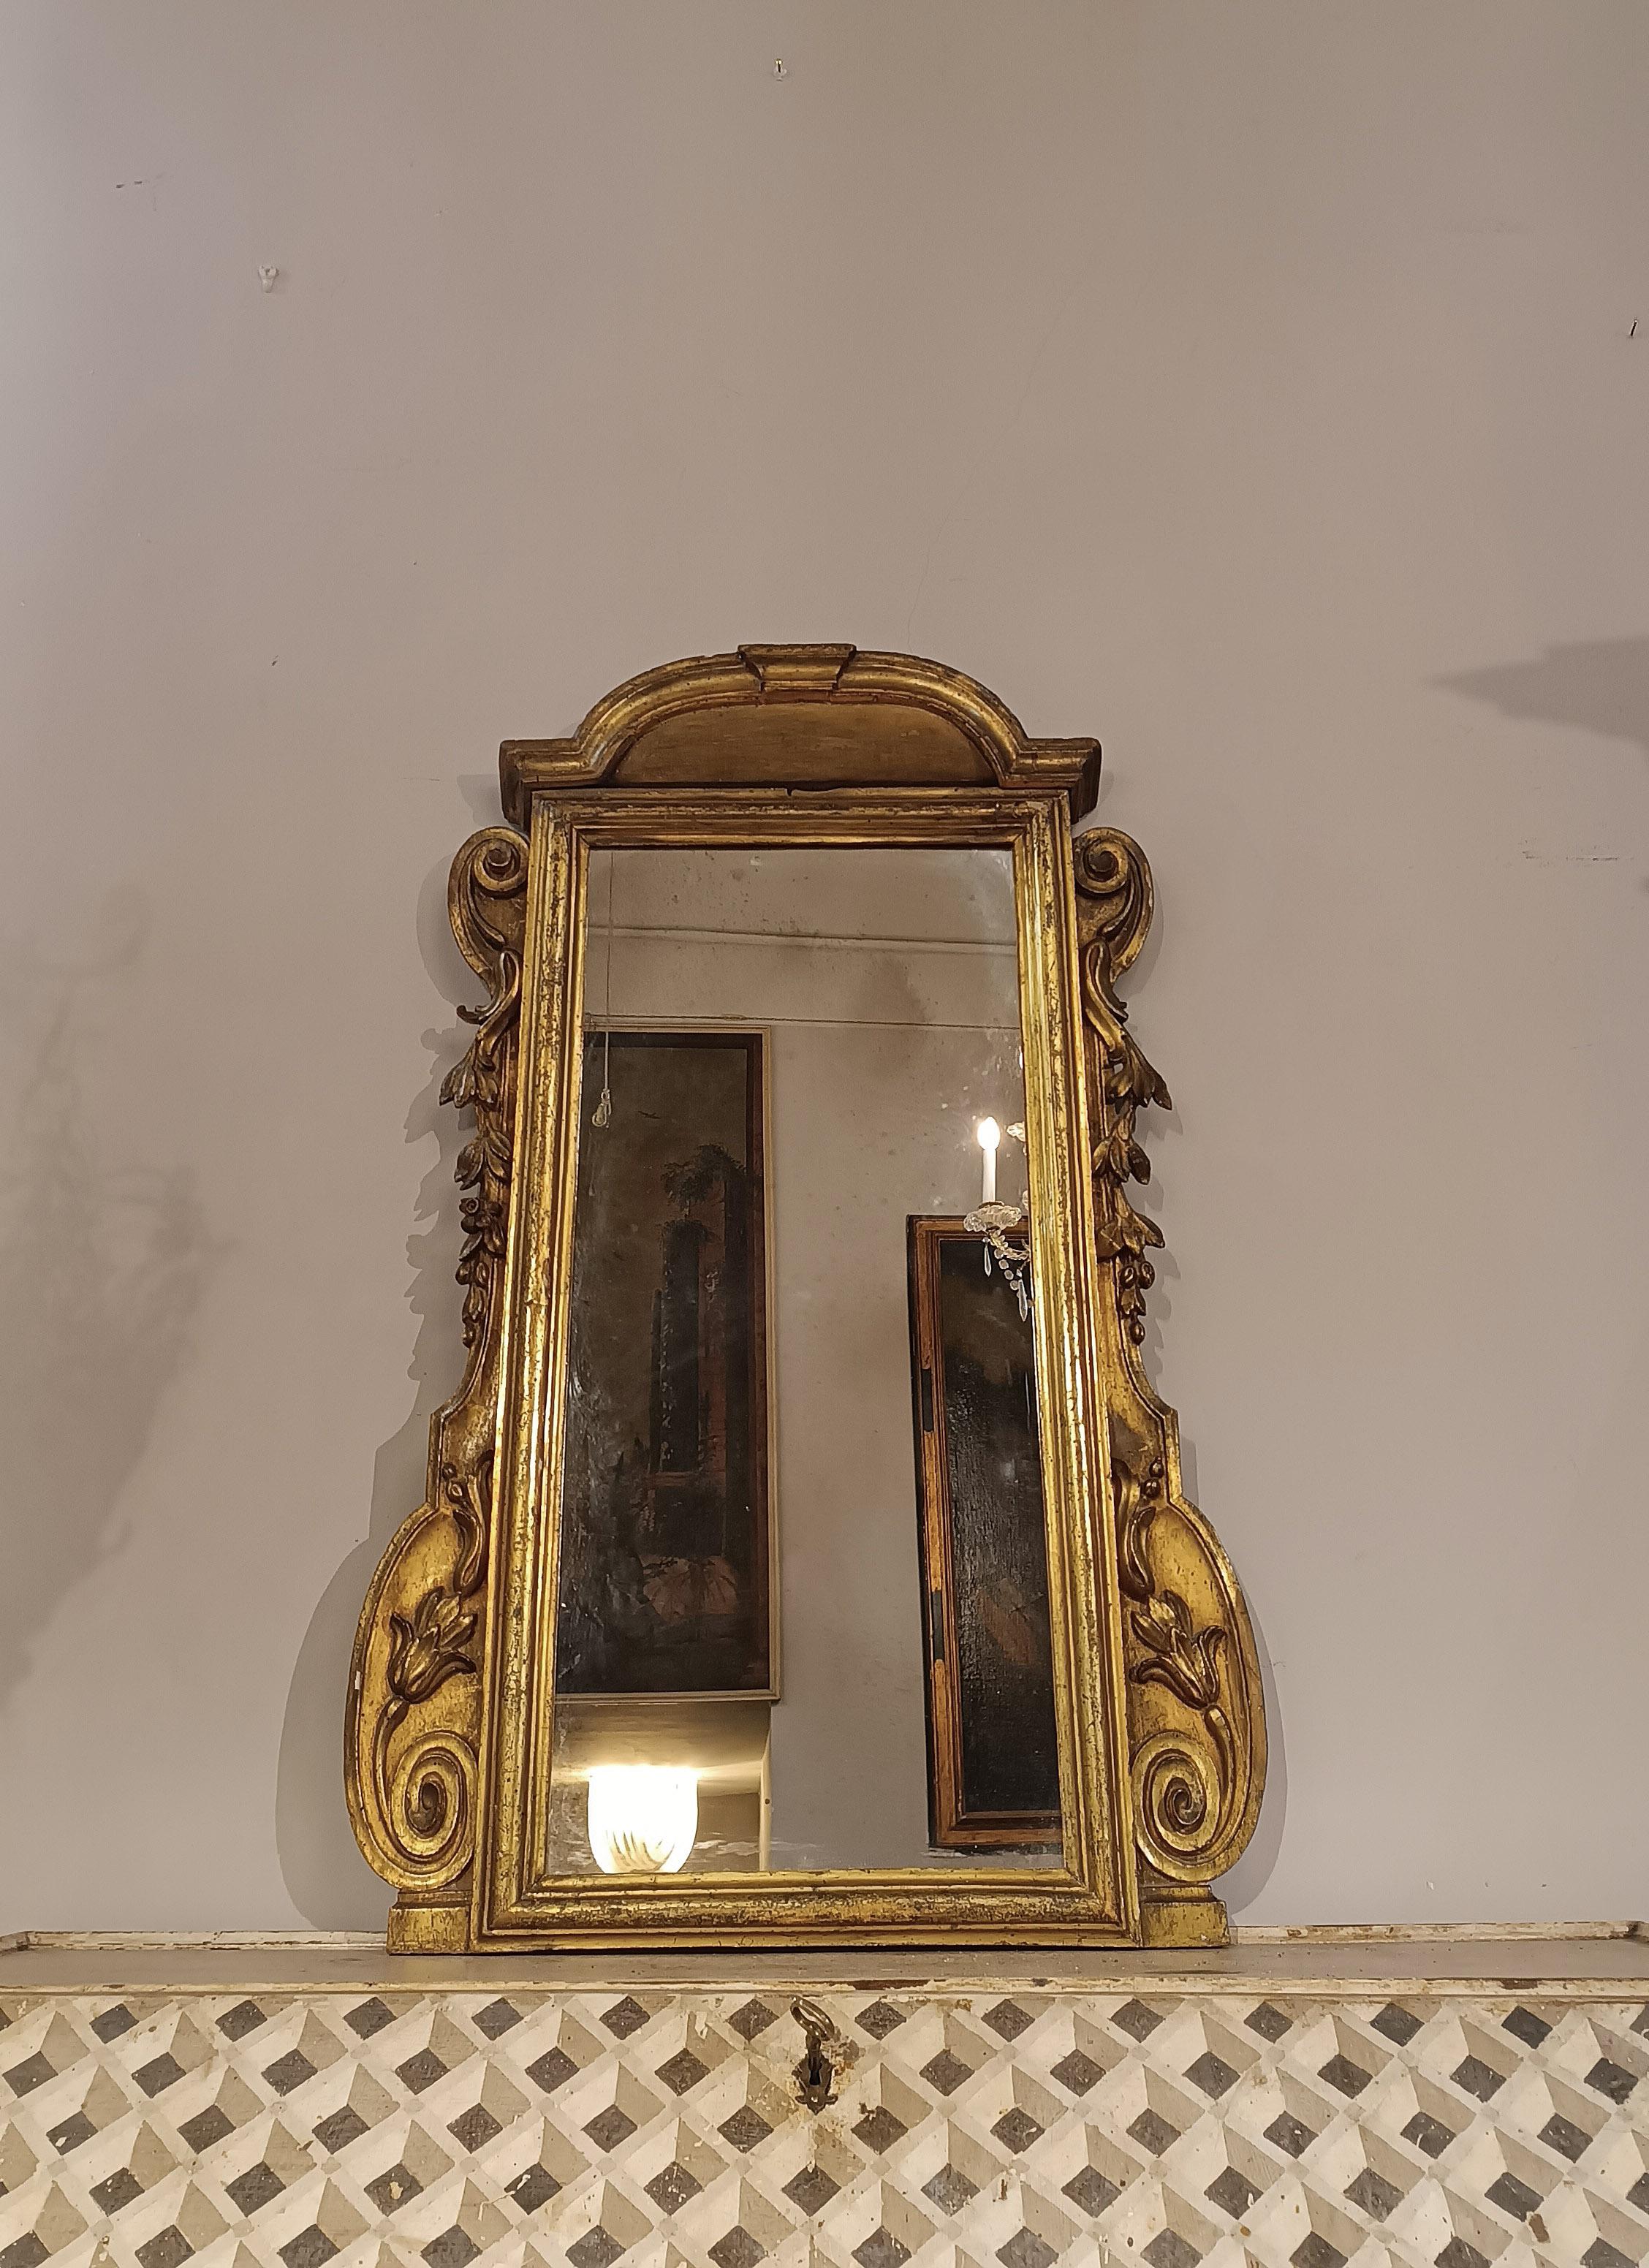 Faszinierender kleiner Spiegel aus geschnitztem und mekkavergoldetem Holz, der sich durch einen mit Schnörkeln und pflanzlichen Elementen verzierten Rahmen auszeichnet. Das Cymatium, ein architektonischer Unterbau und Kragstein, verleiht dem Ganzen